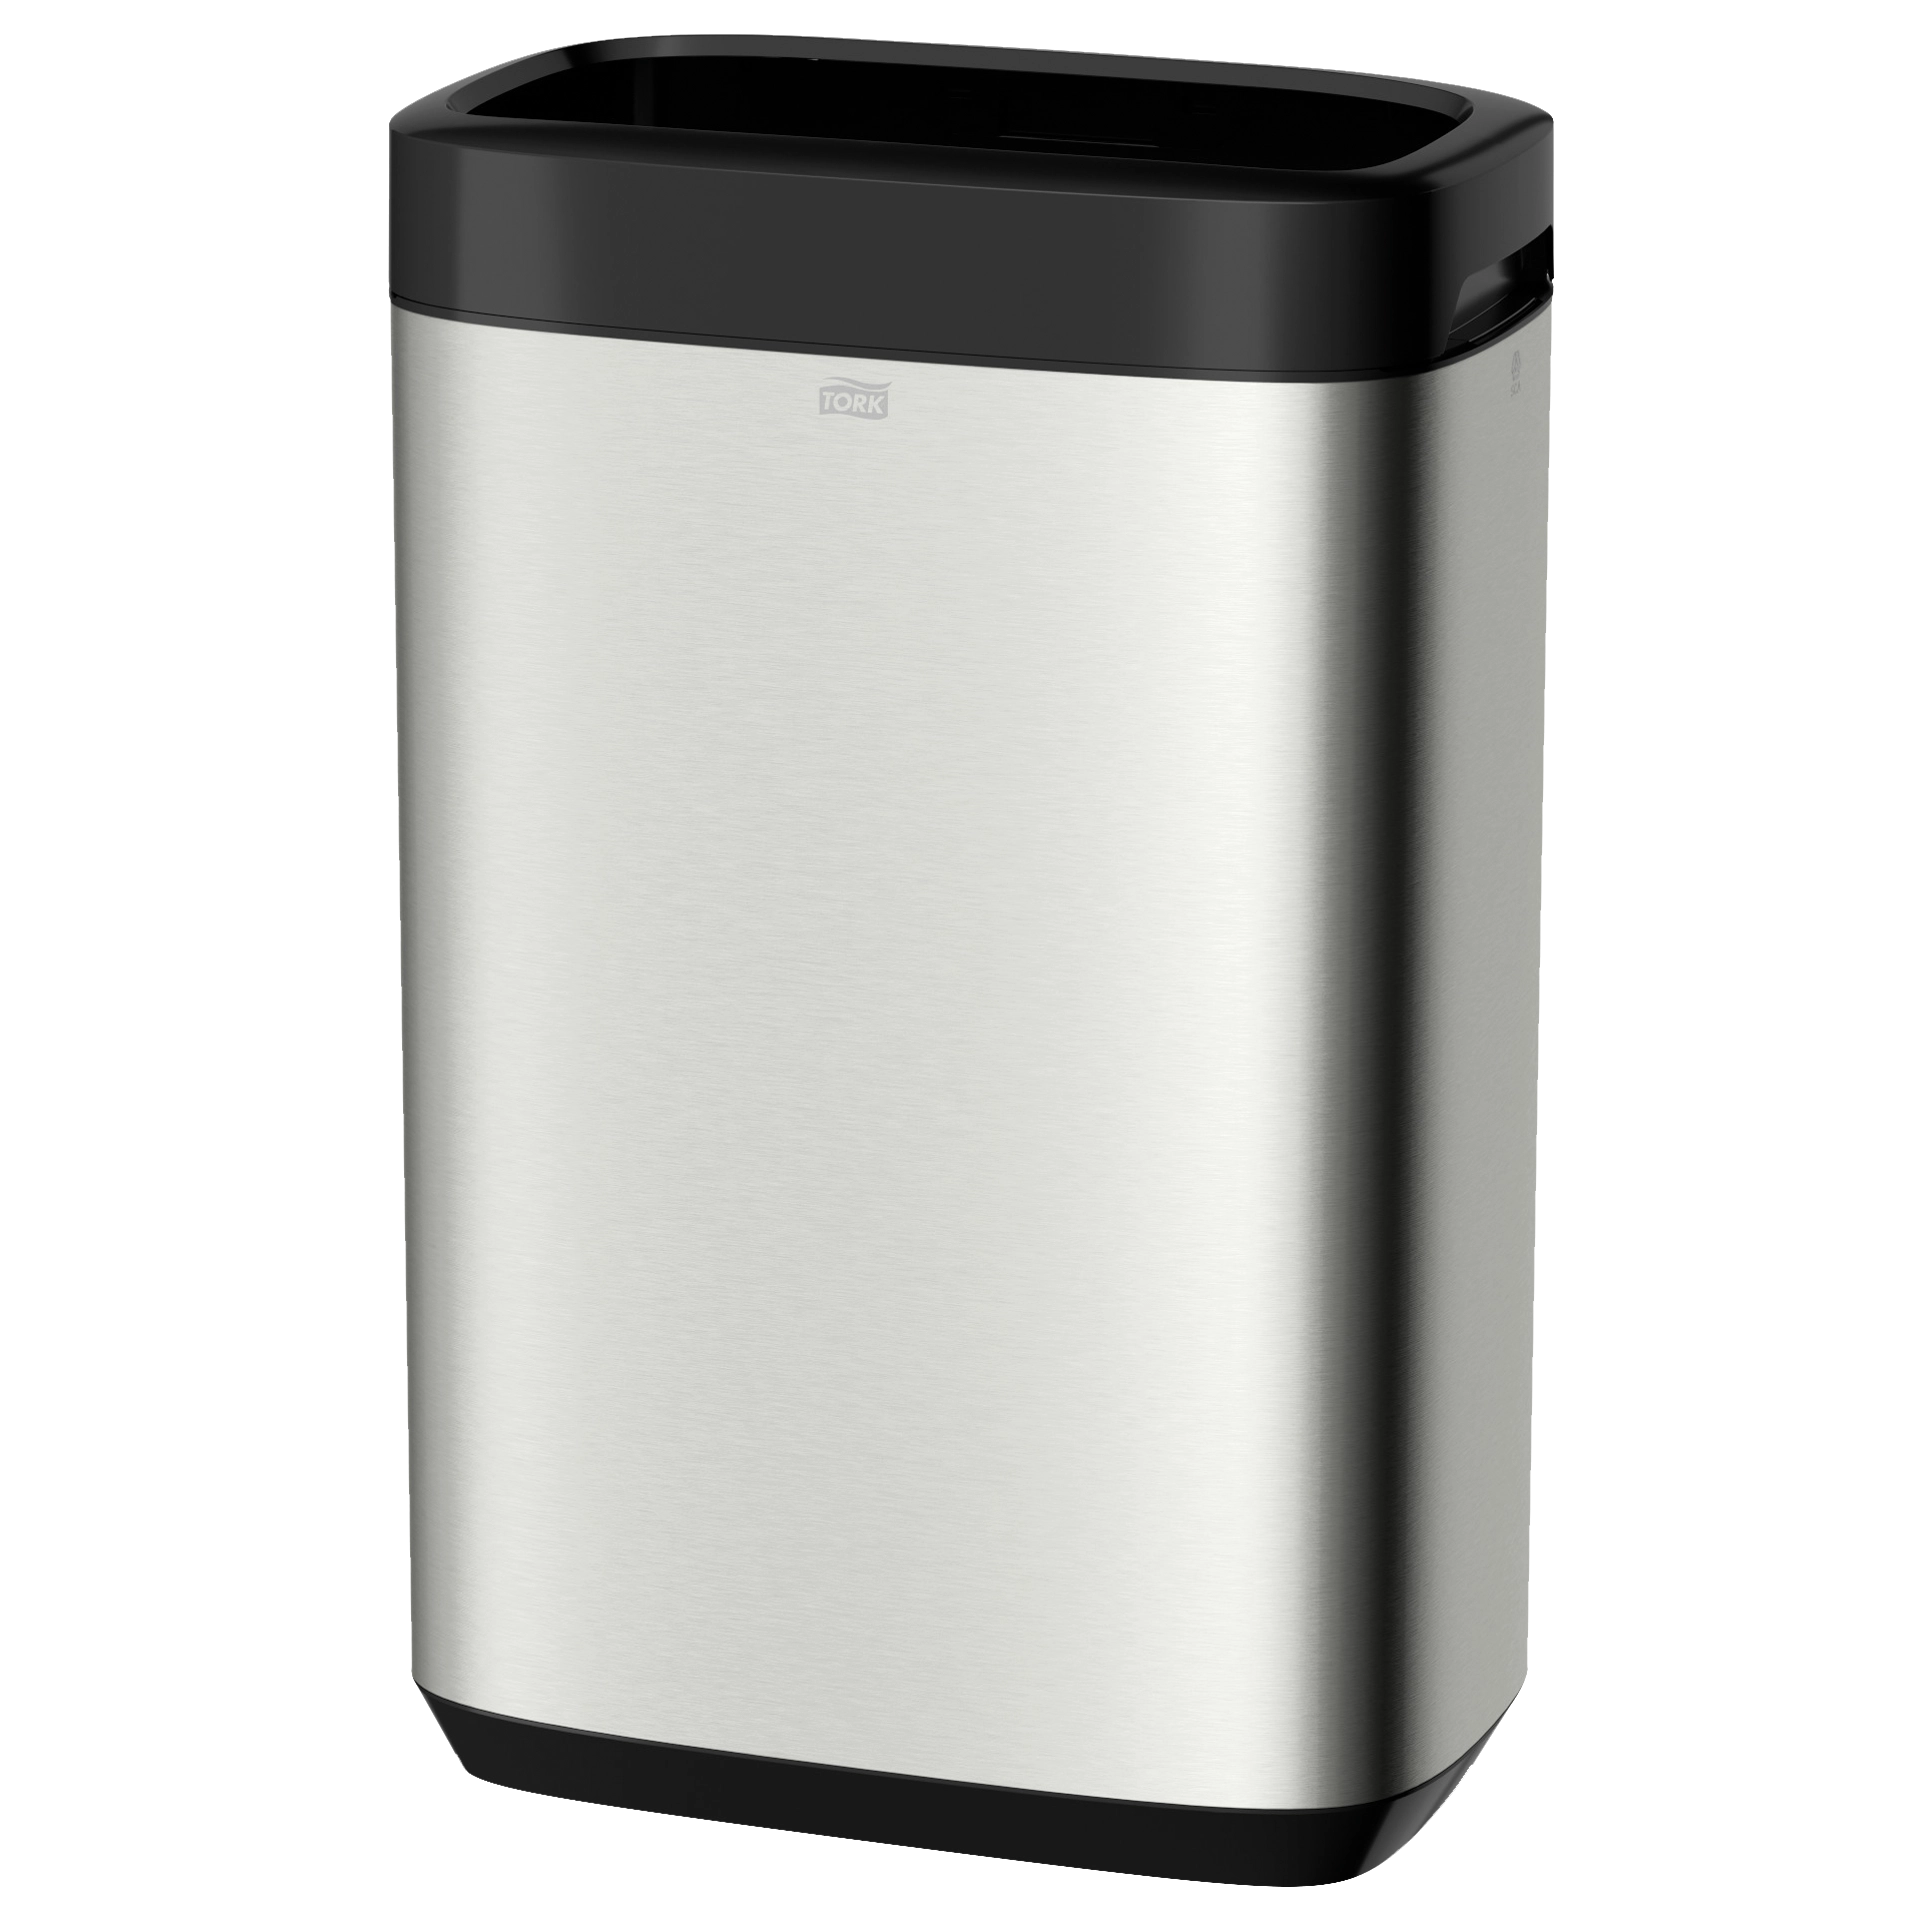 Abfallbehälter B1 Edelstahl gebürstet Image Design Tork 50 lt. 61,4x39,5x25,3 cm mit Aufsatz 460015